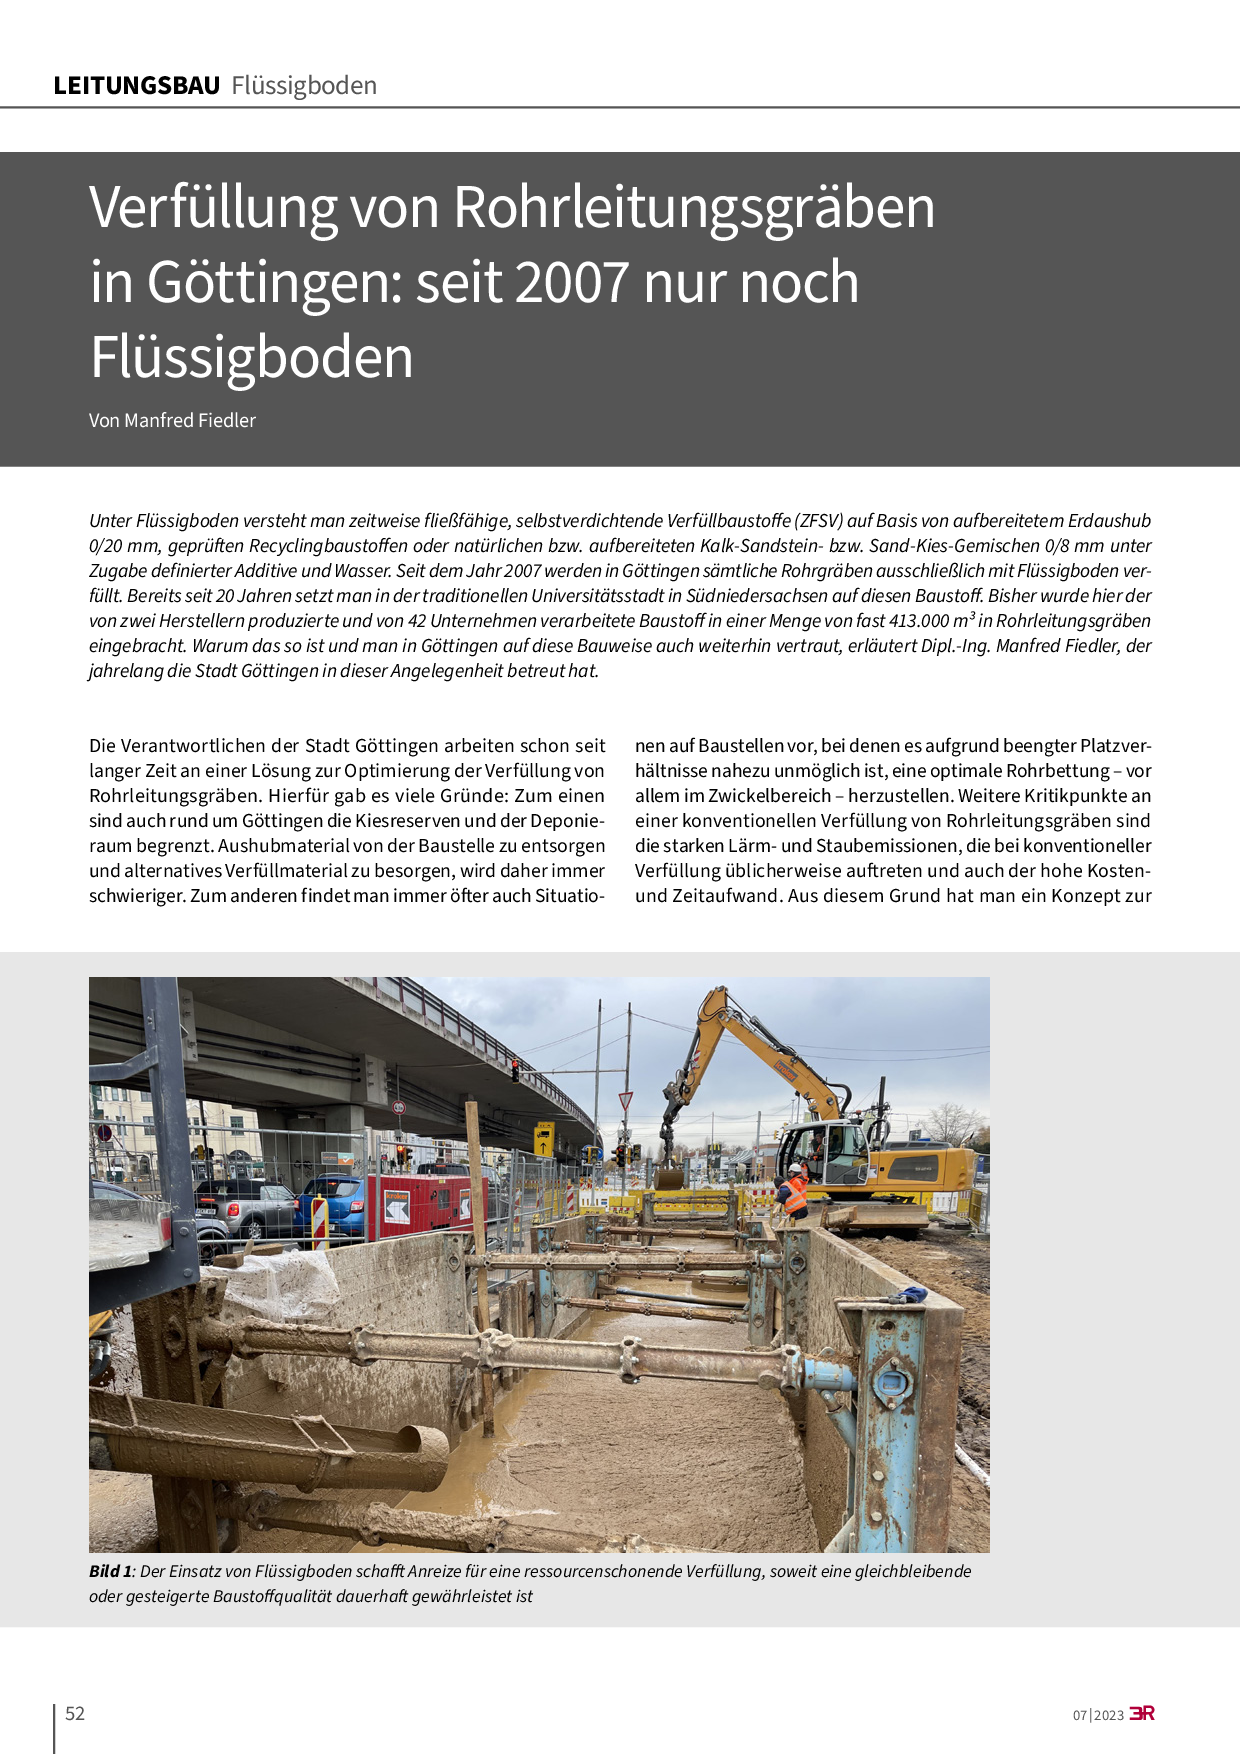 Verfüllung von Rohrleitungsgräben in Göttingen: seit 2007 nur noch Flüssigboden